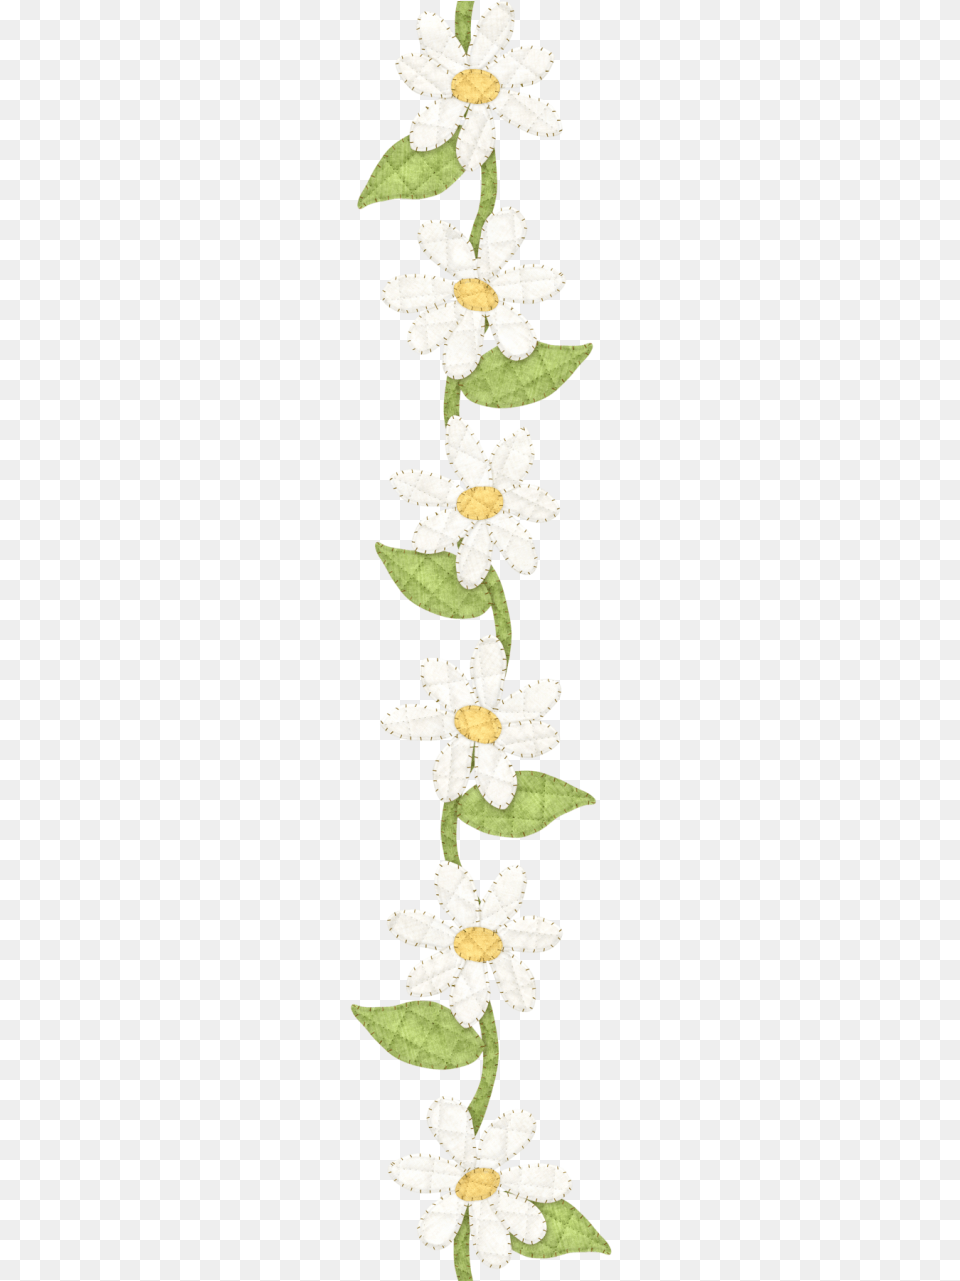 Daisy Clipart Daisy Chain Clipart Daisy Chain, Flower, Leaf, Petal, Plant Png Image